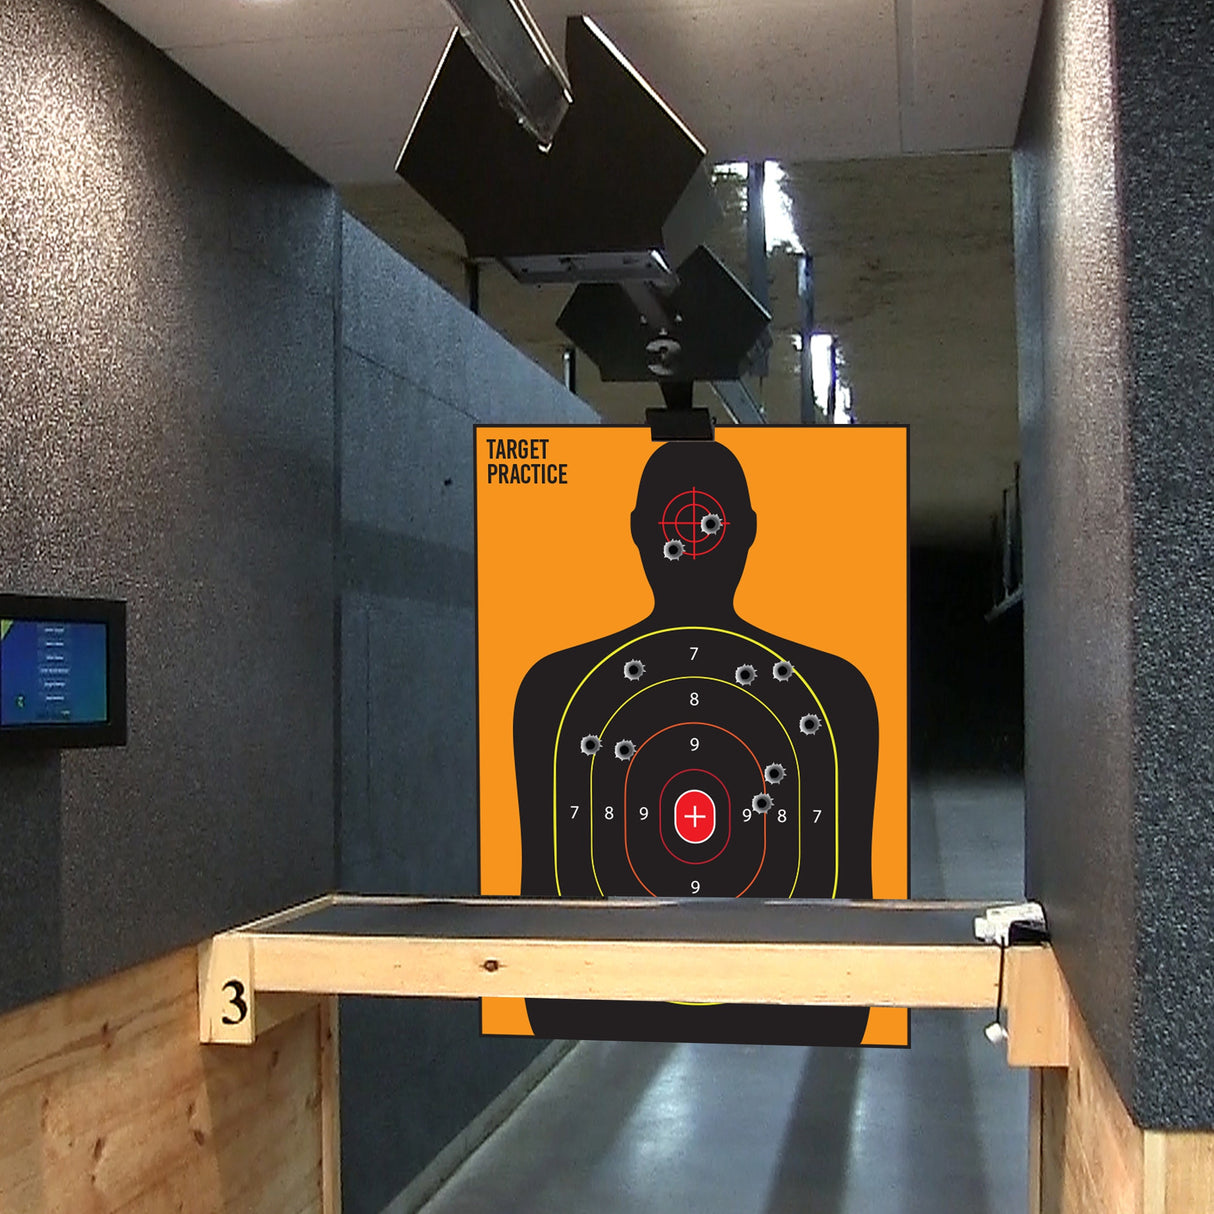 Range Shooting Targets Practice For Gun Rifle Pistol Airsoft Handgun - Large Outdoor Human Silhouette Paper Shoot Set